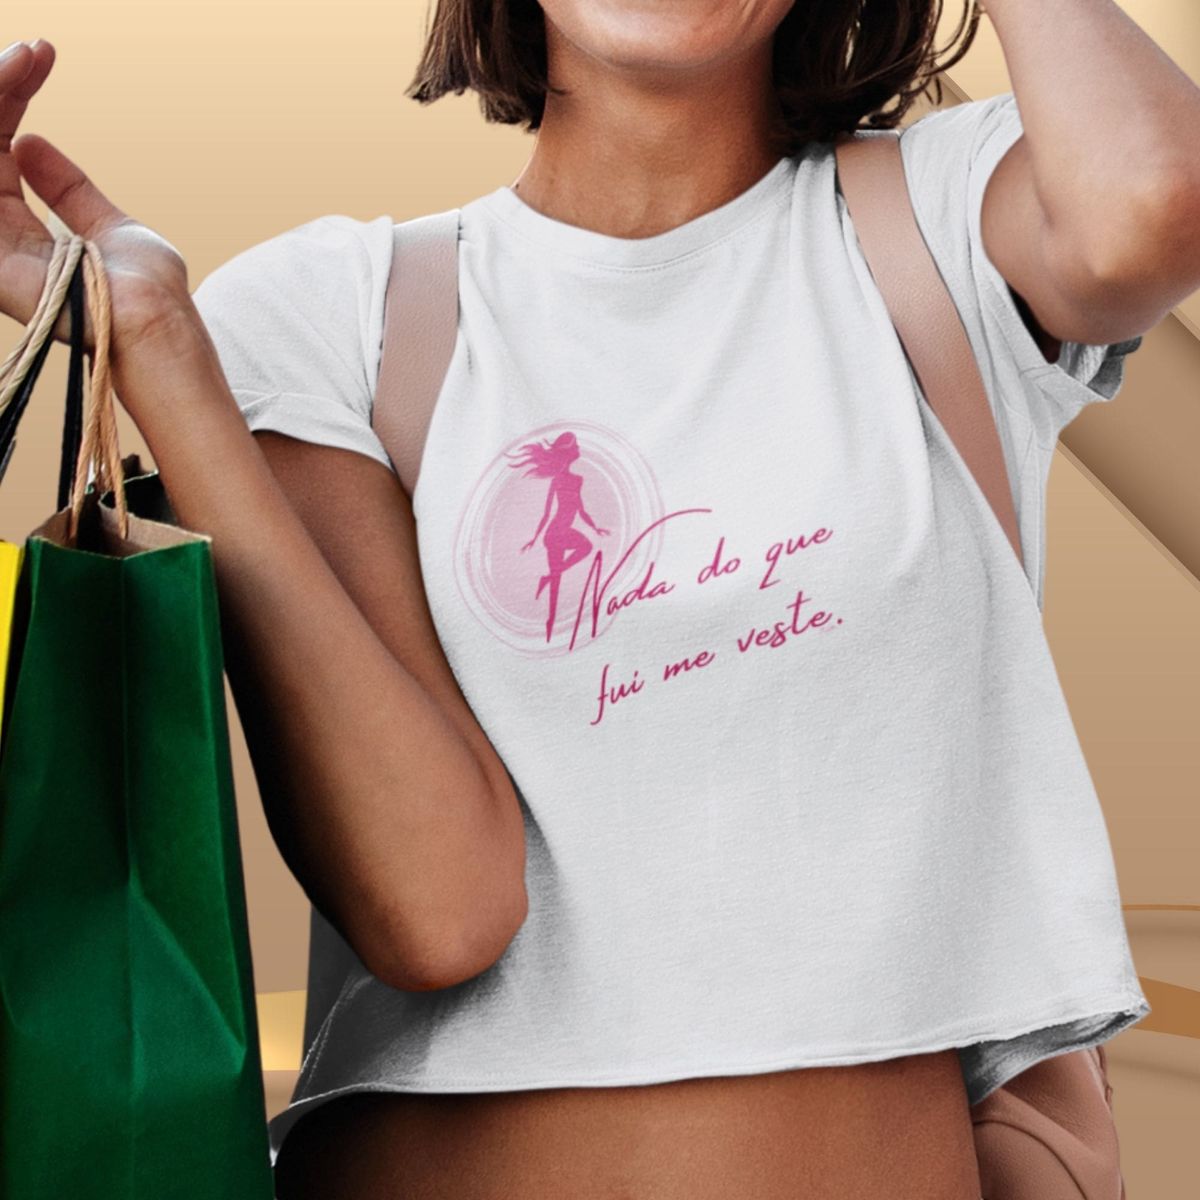 Nome do produto: Camiseta Feminina Cropped Nada Do Que Fui Me Veste